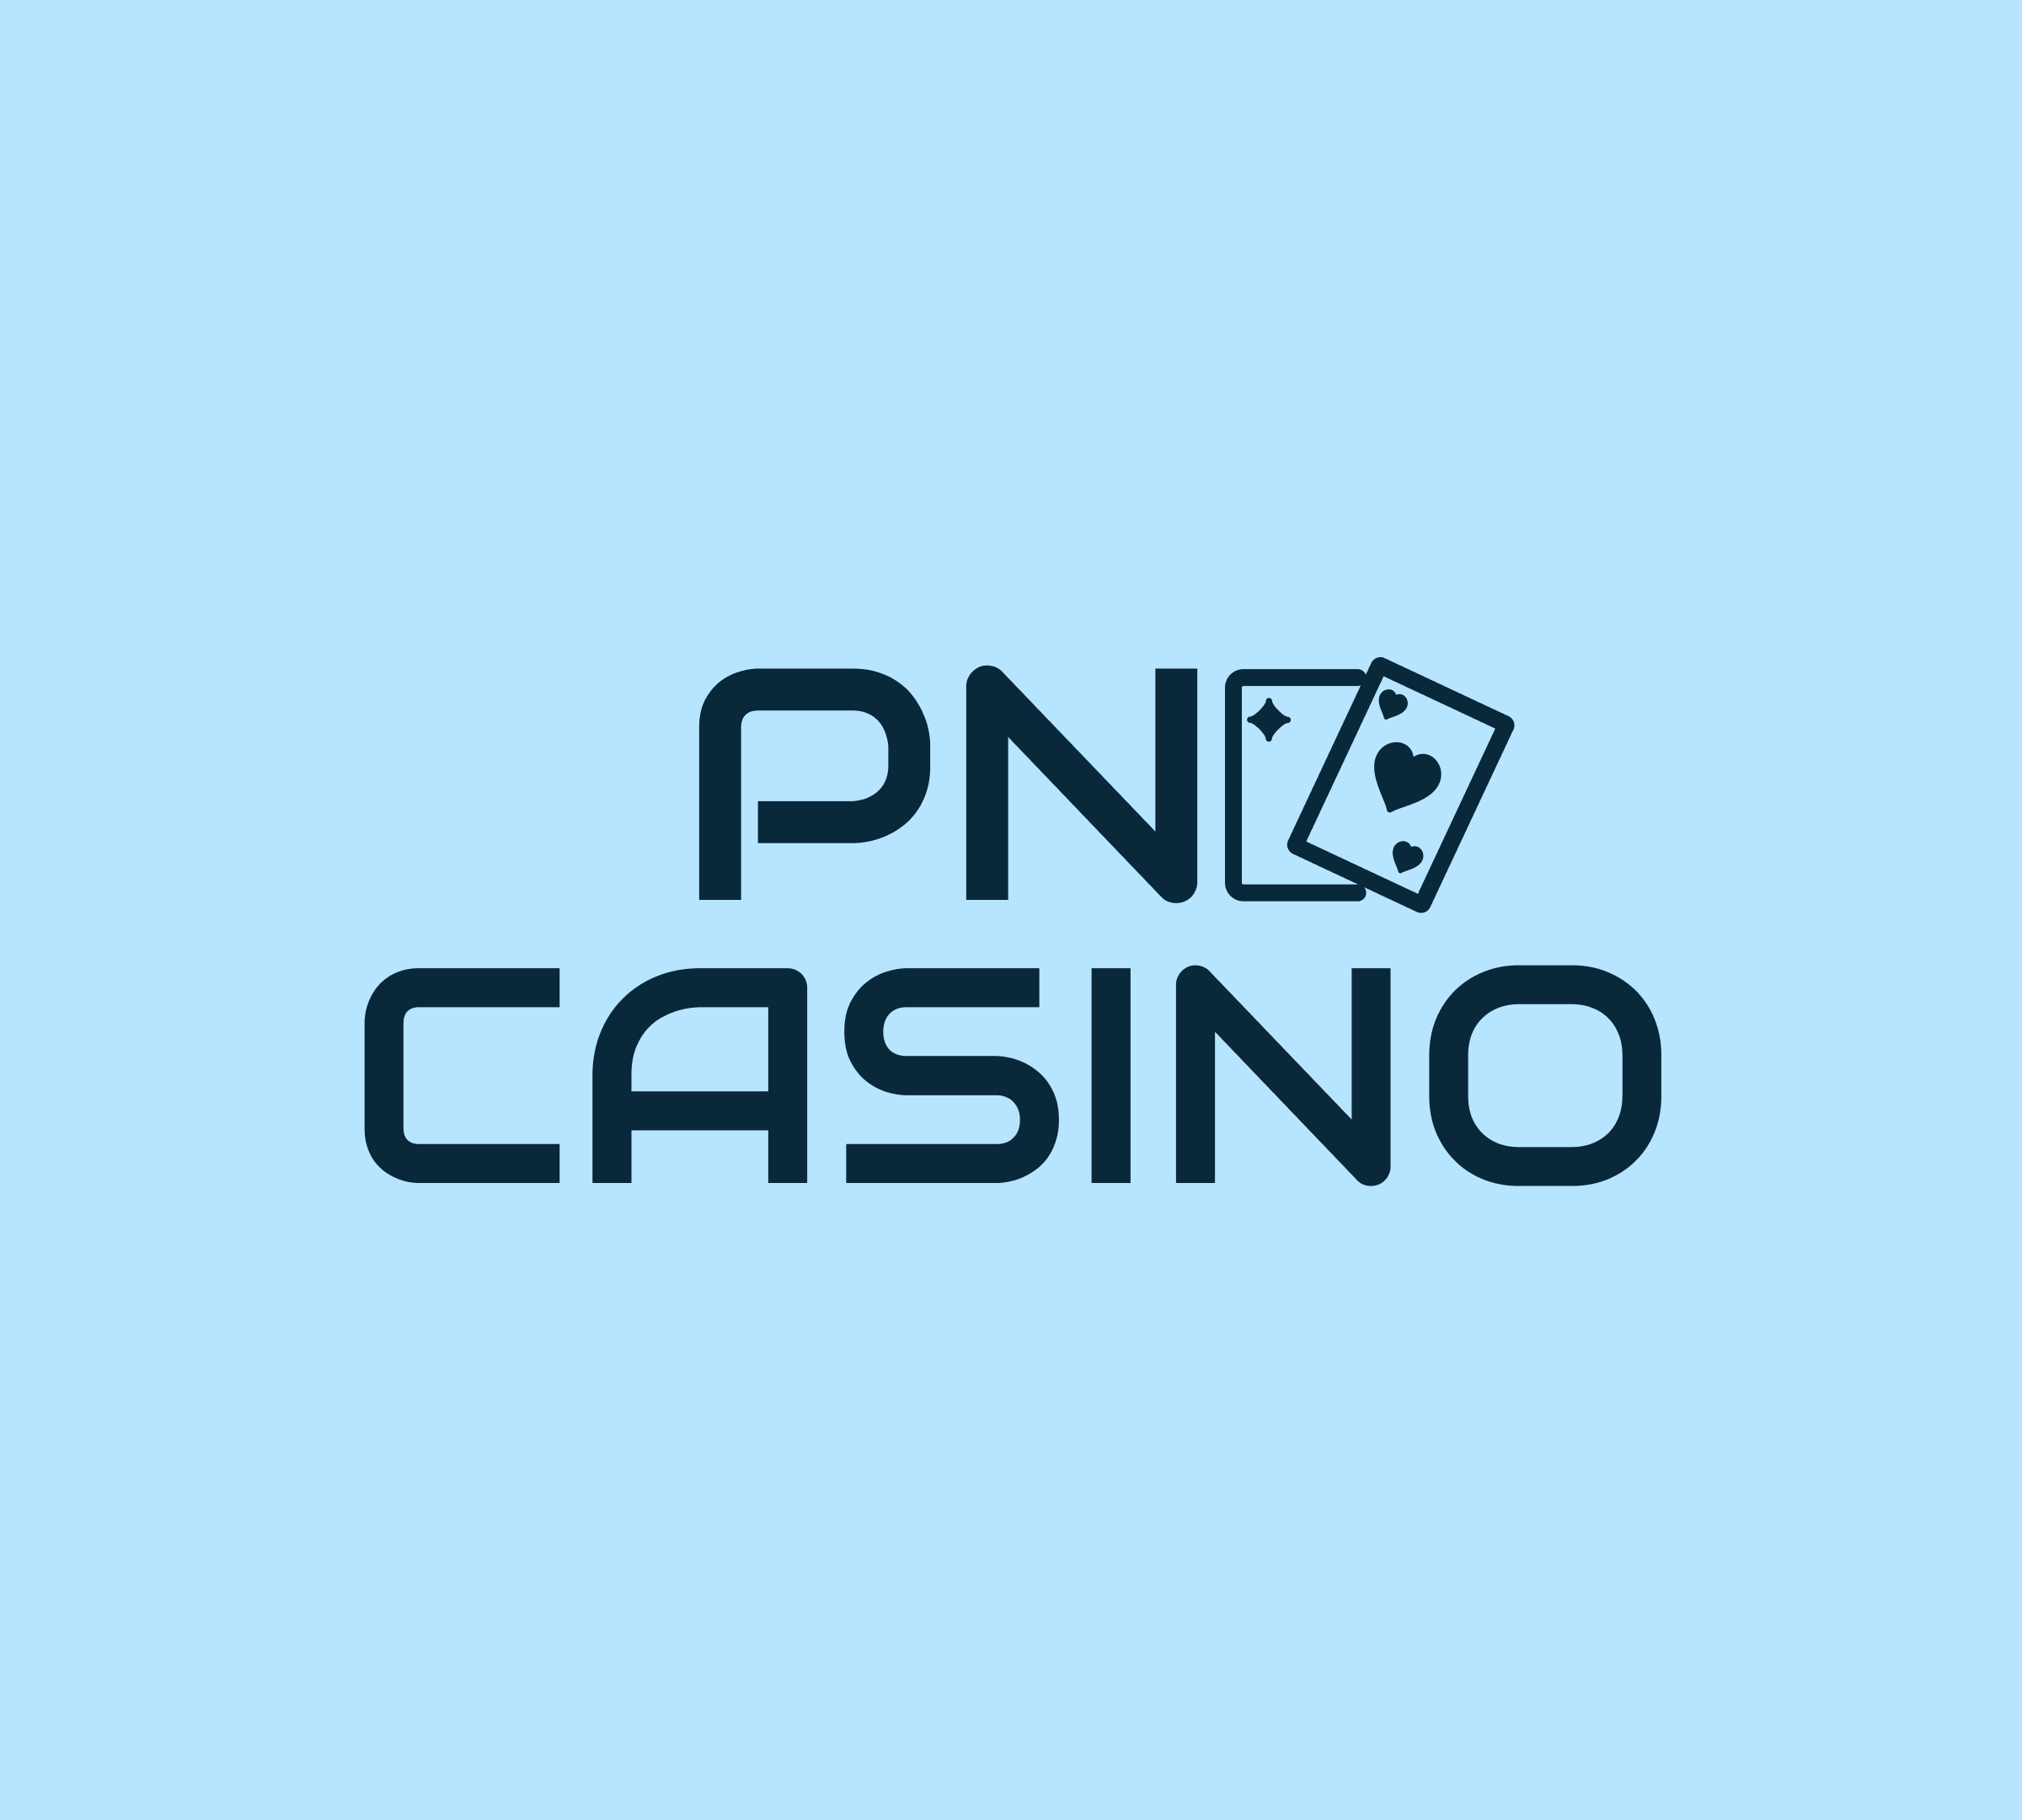 PN Casino